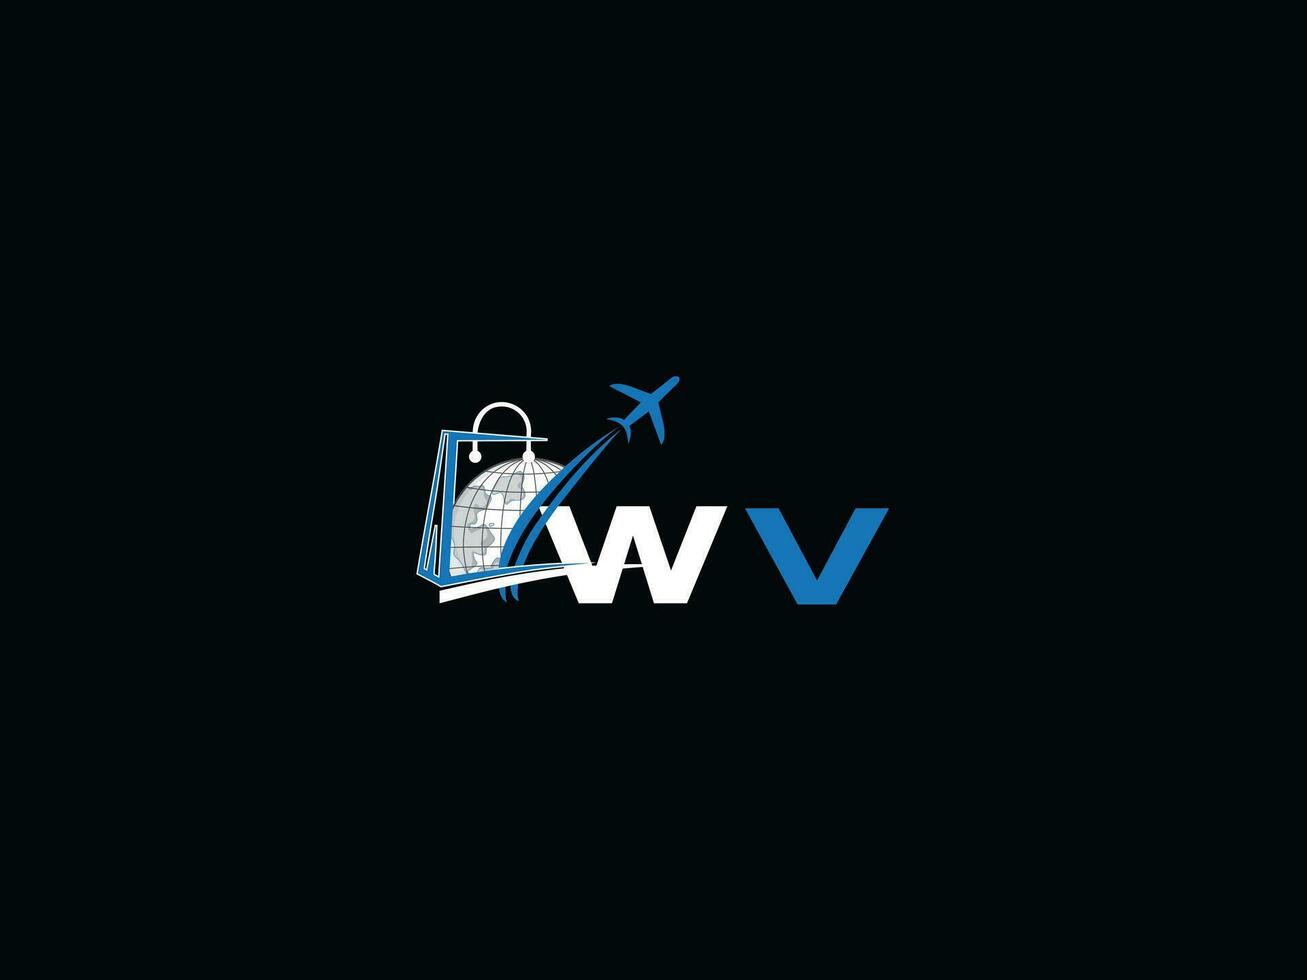 uniek lucht reizen wv logo icoon, creatief globaal wv eerste op reis logo brief vector